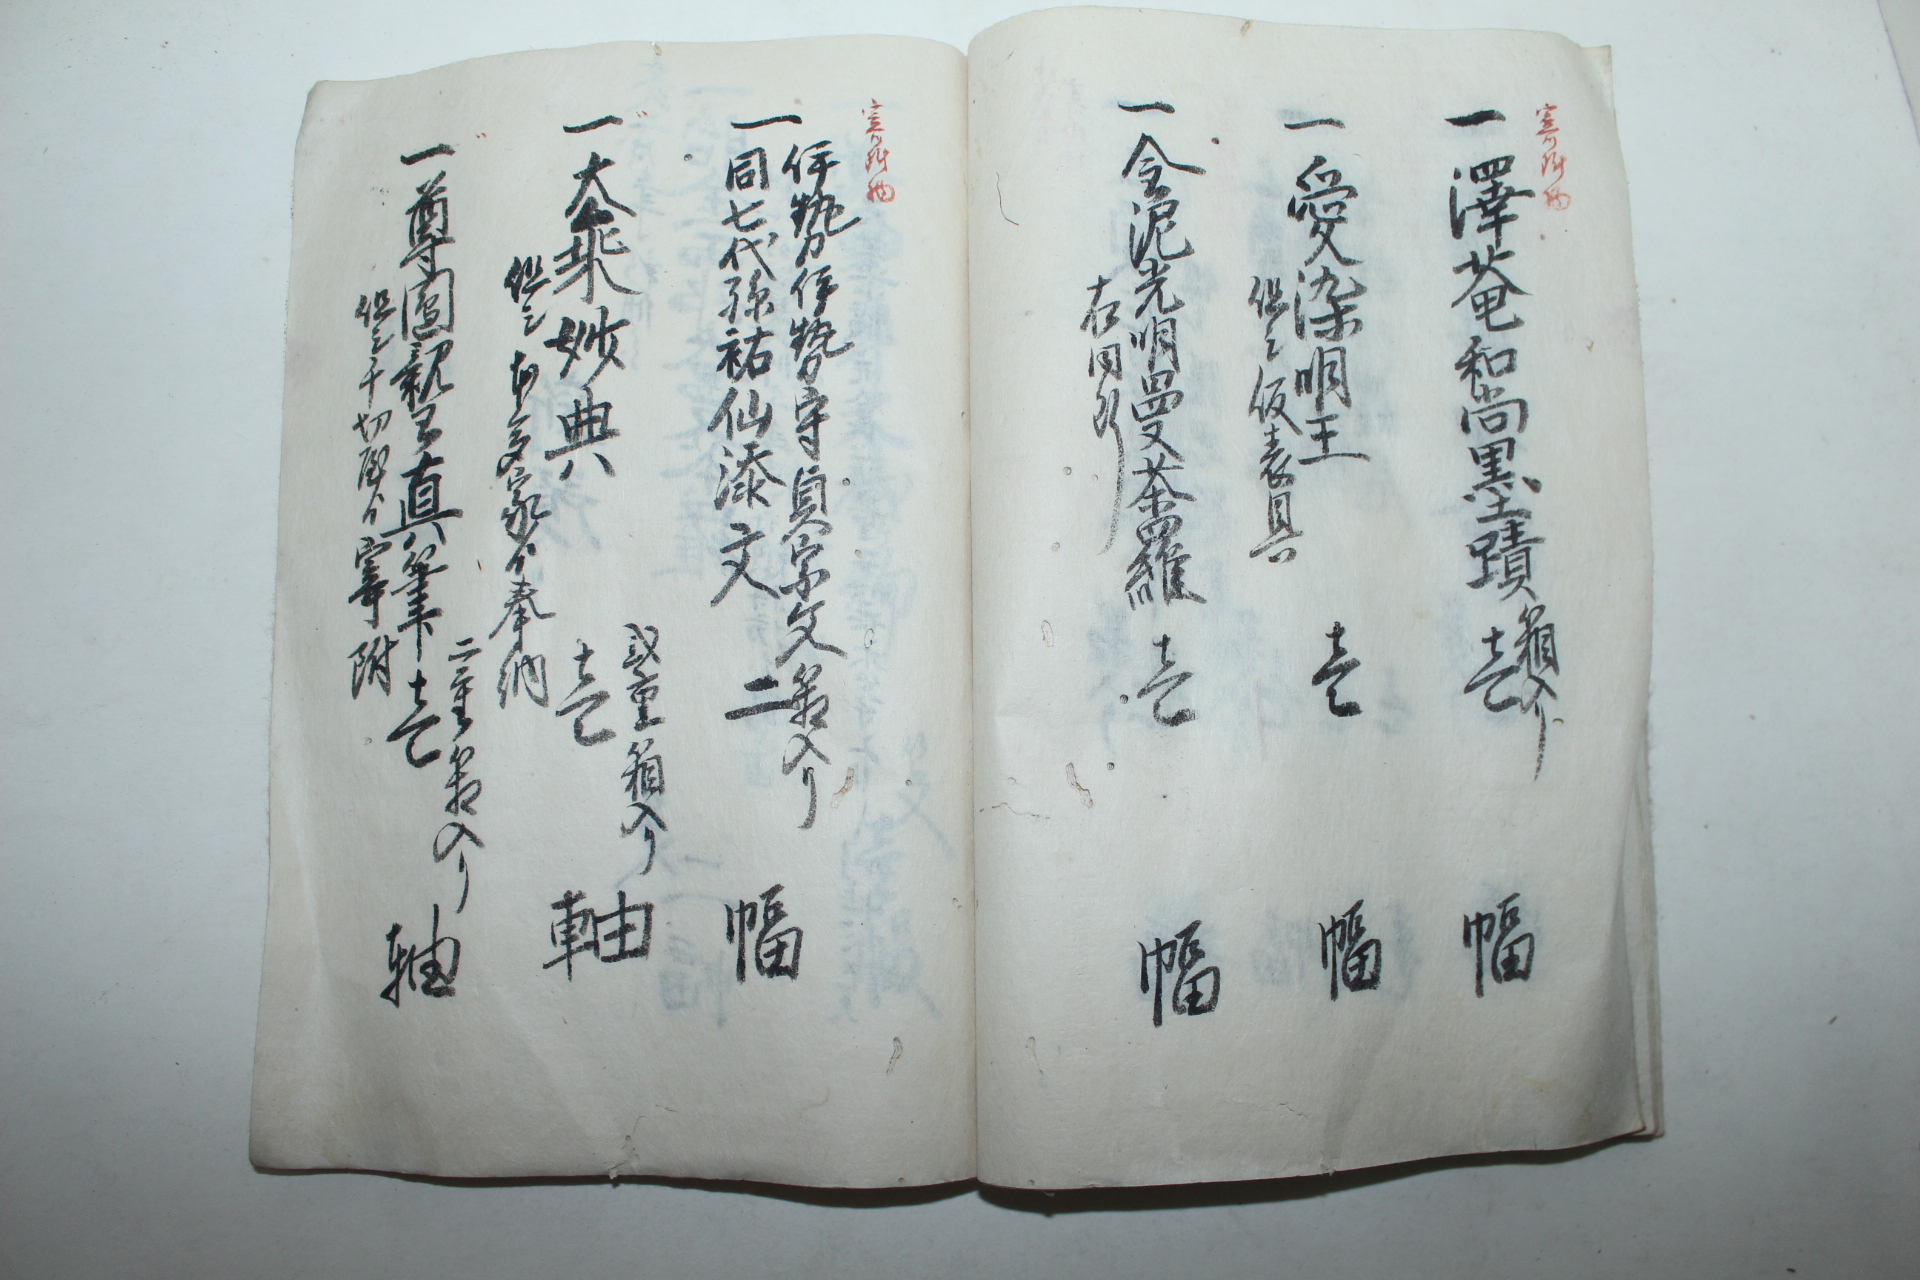 1852년(嘉永壬子年) 일본필사본 문서 성책